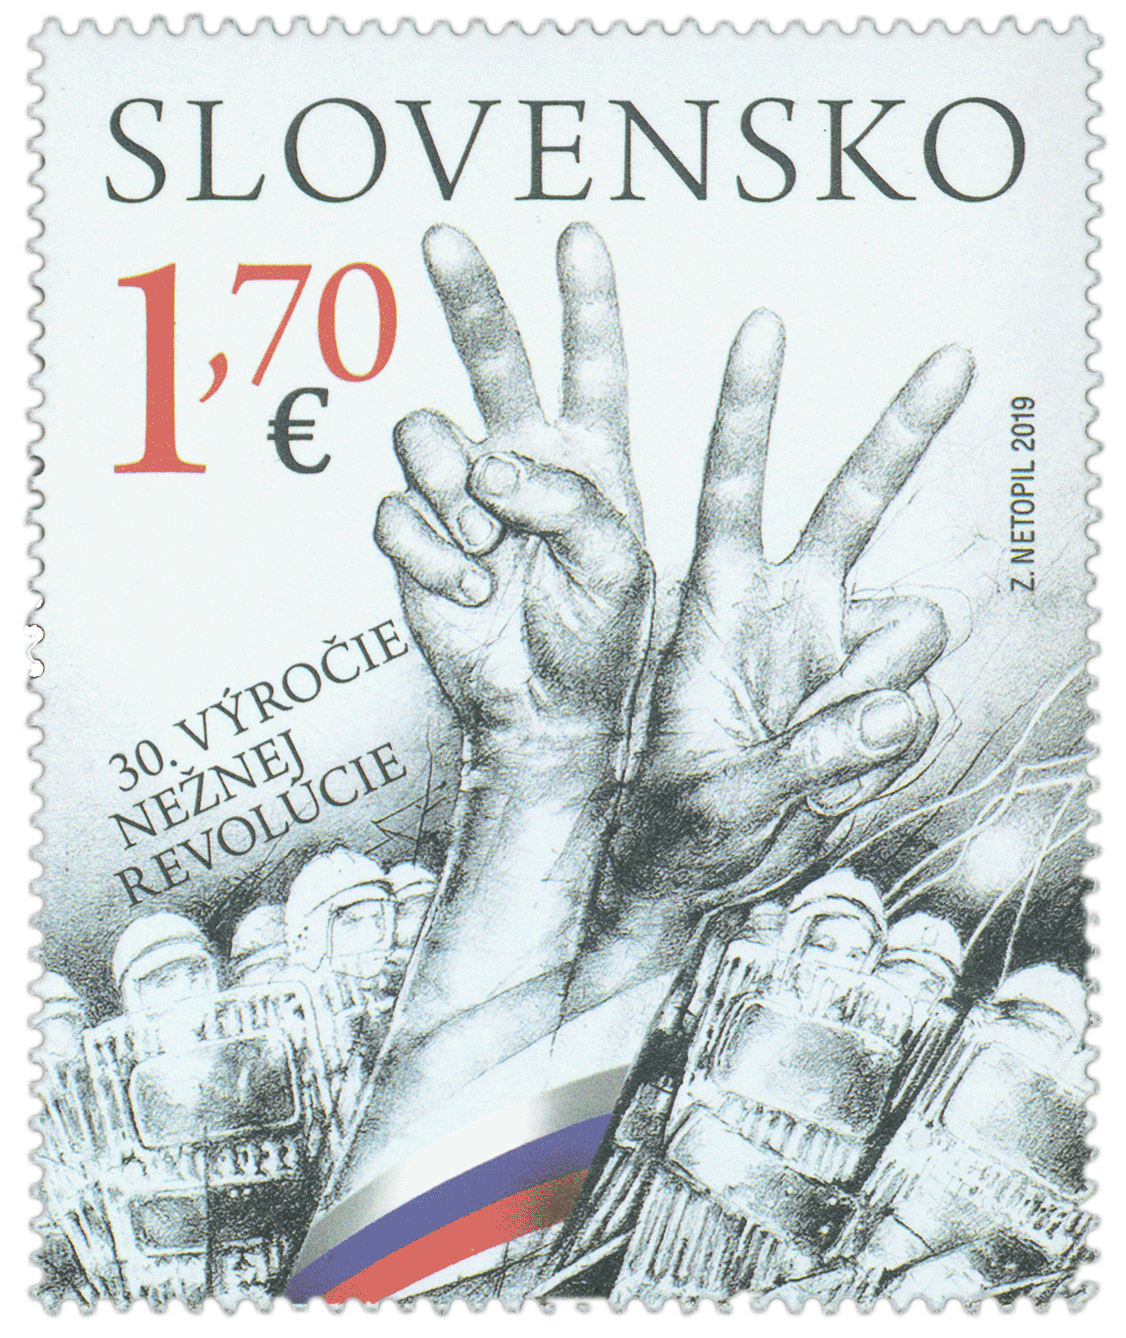 702 - Spoločné vydanie s Českou republikou: 30. výročie Nežnej revolúcie